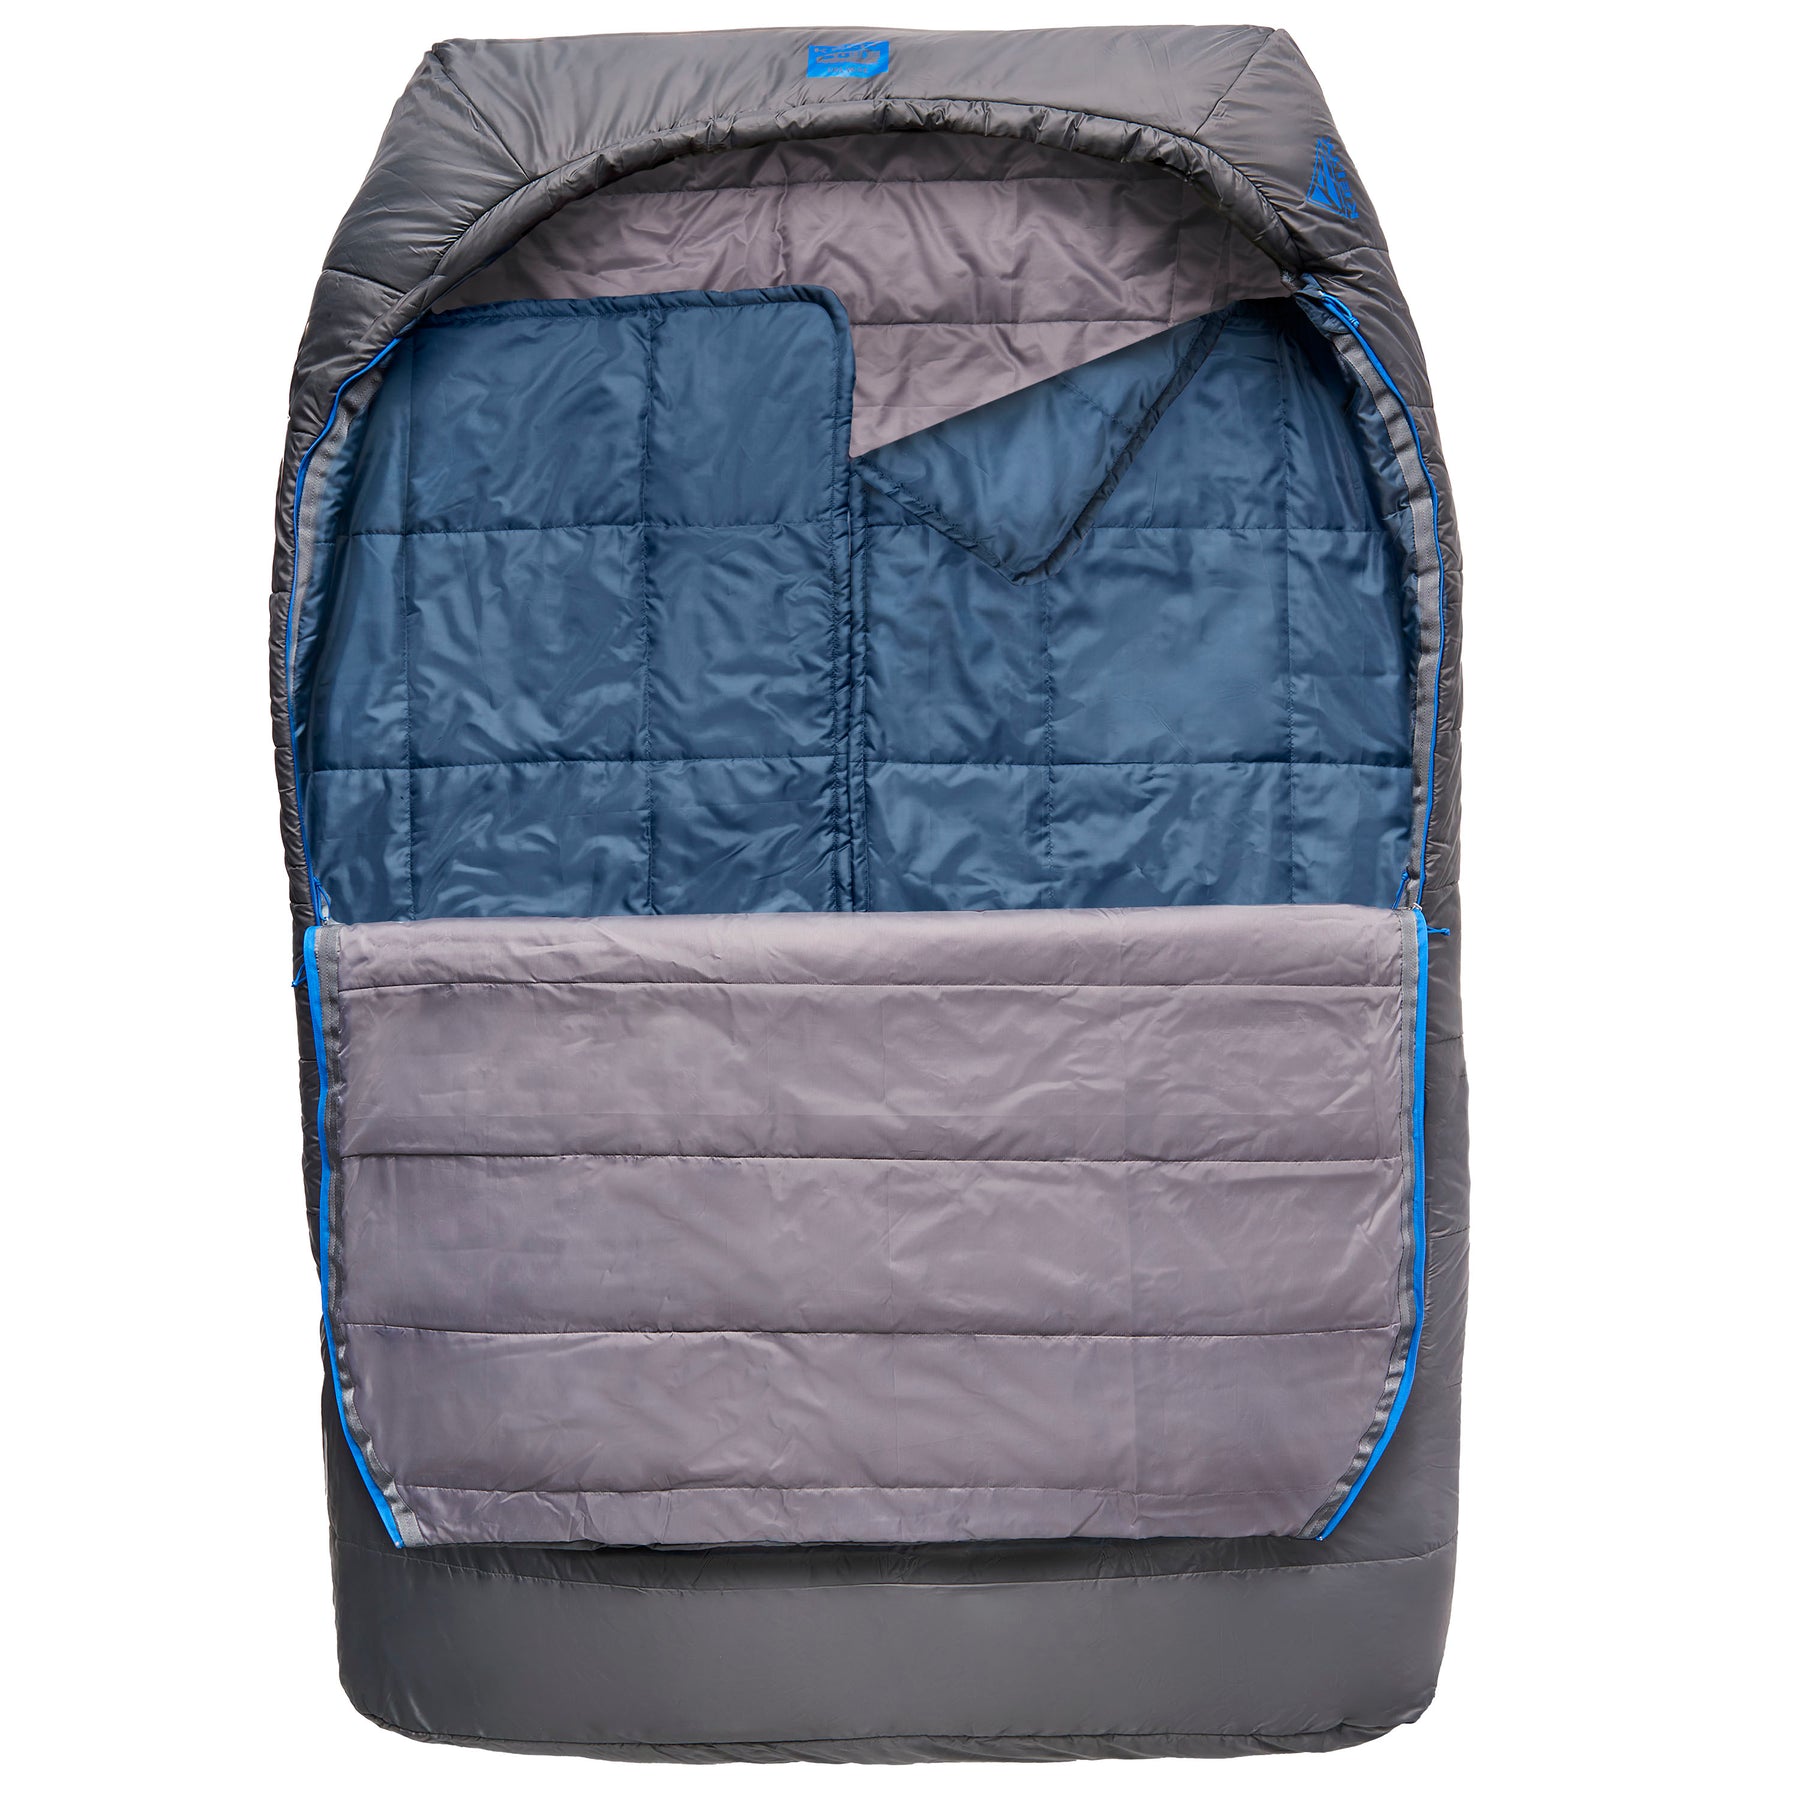 Coleman Basalt double sleeping bag review – TentLife